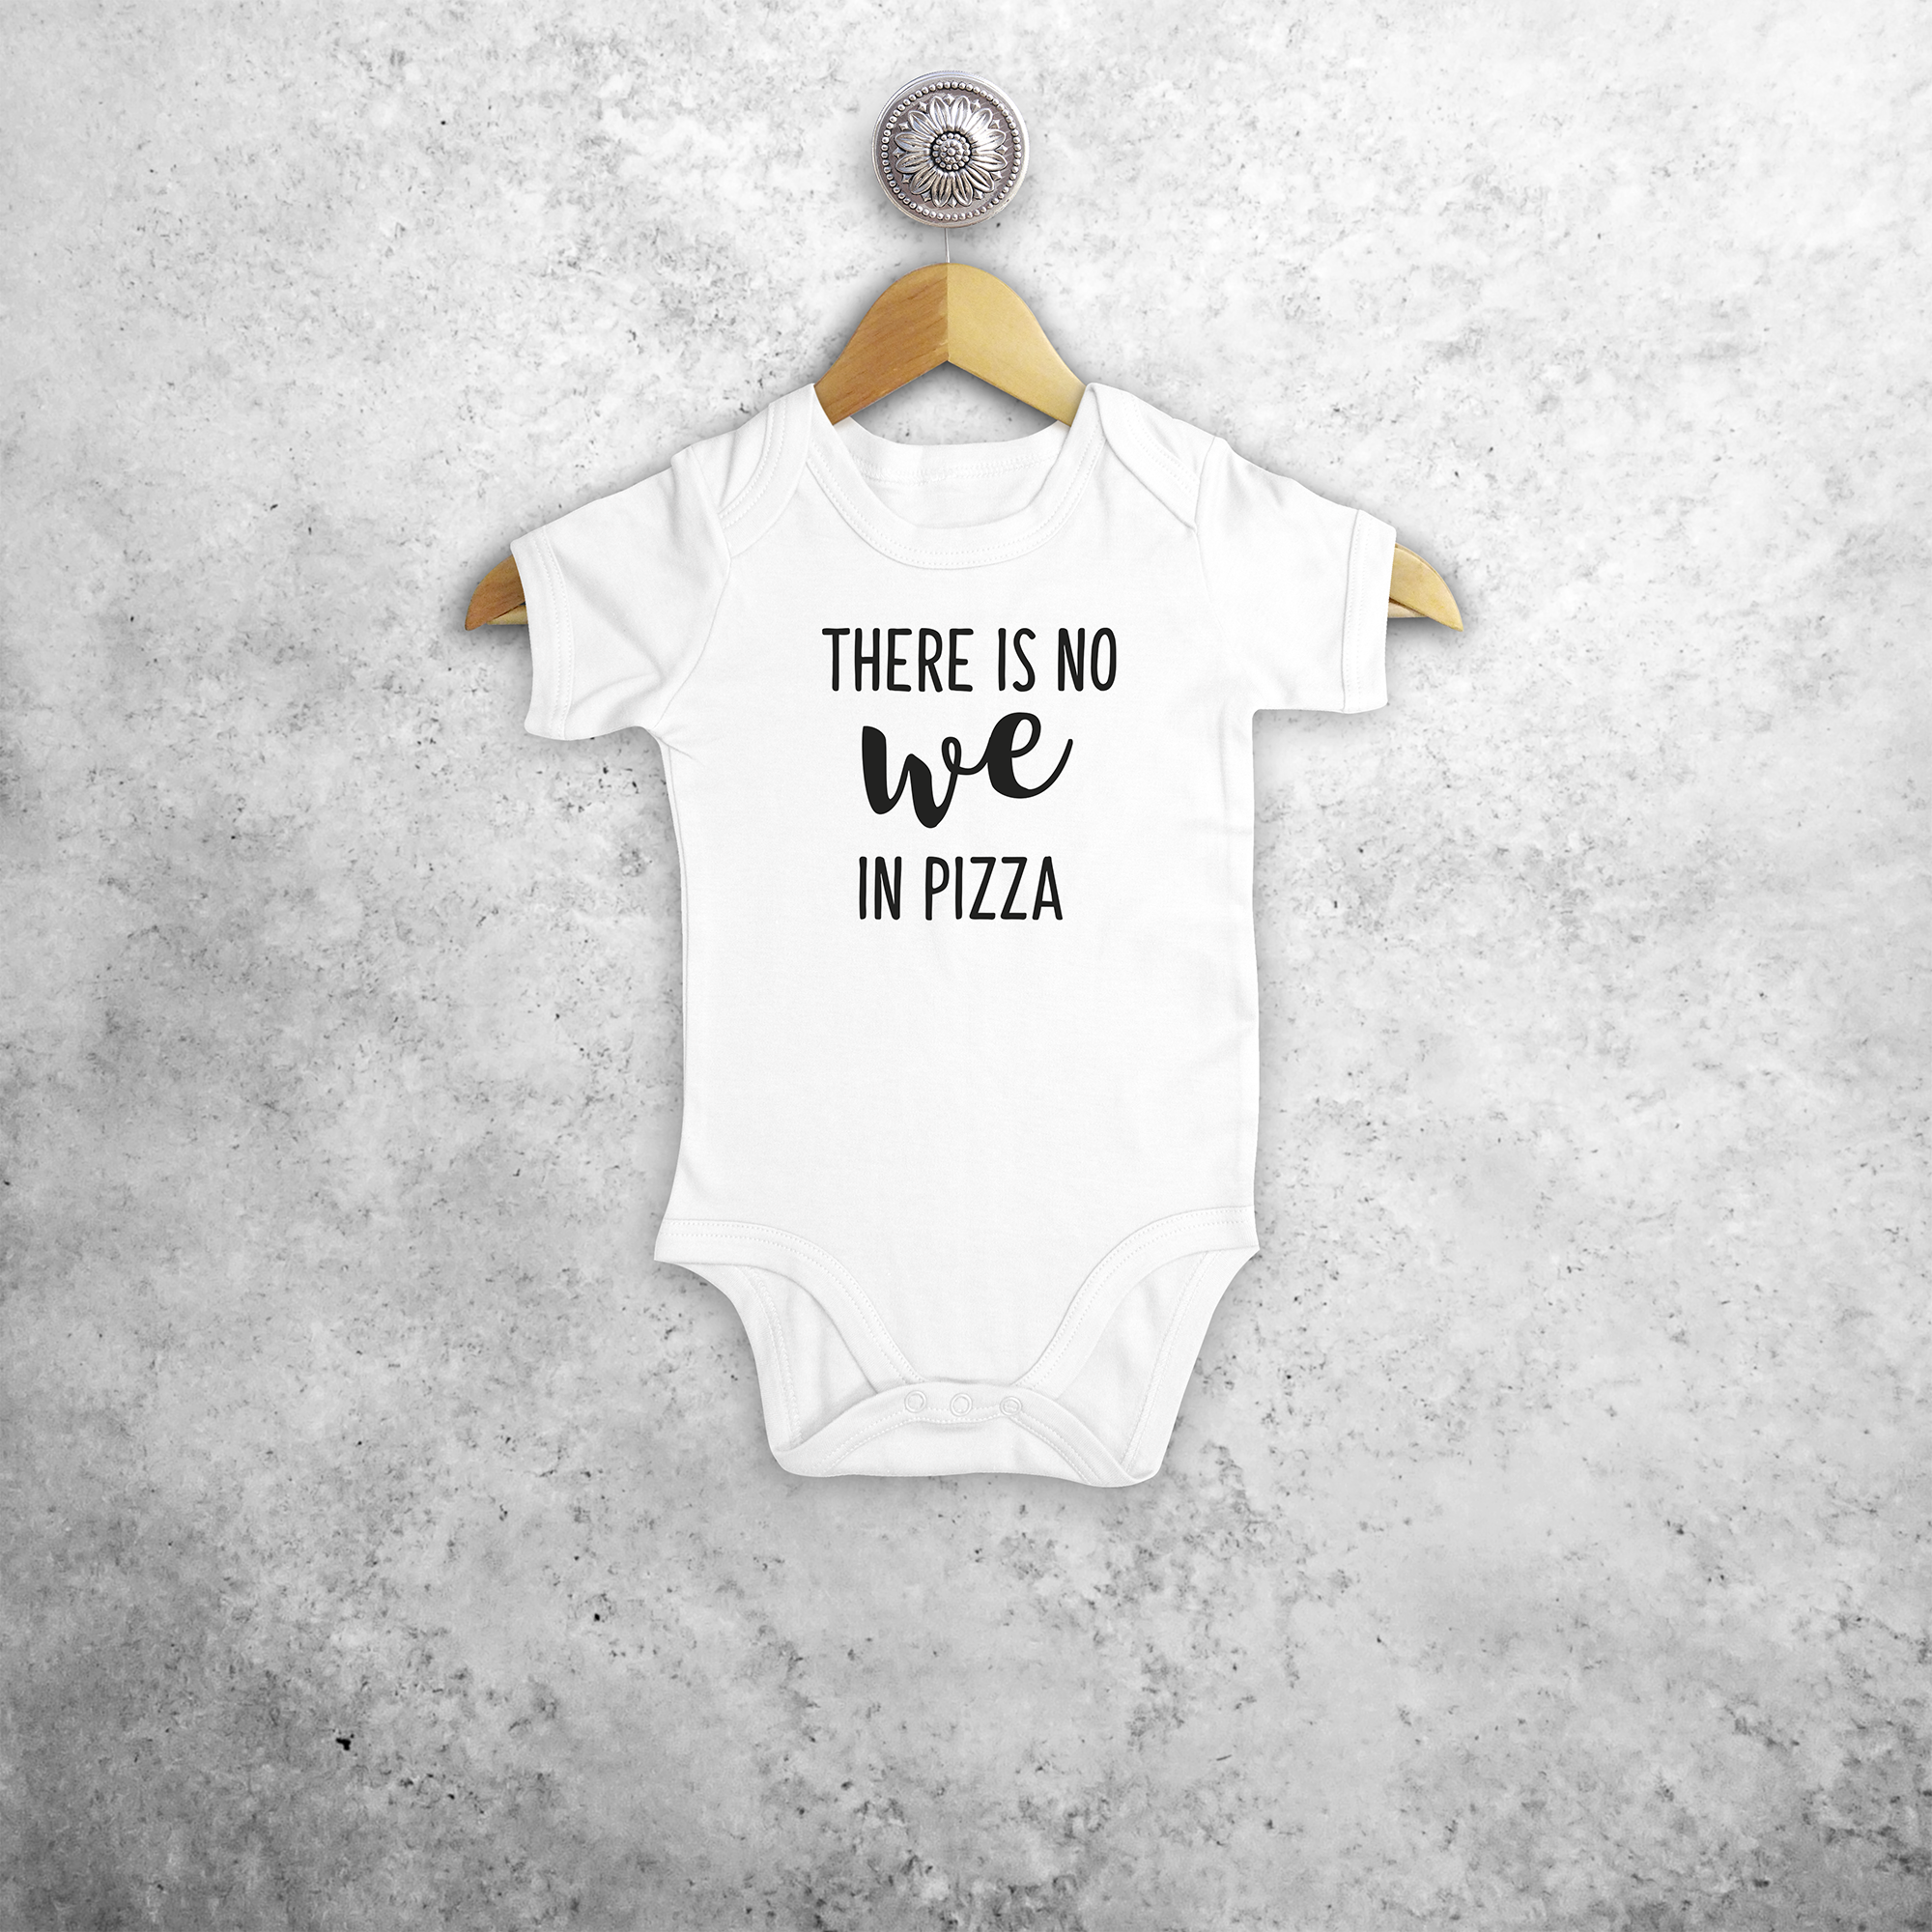 'There is no we in pizza' baby kruippakje met korte mouwen